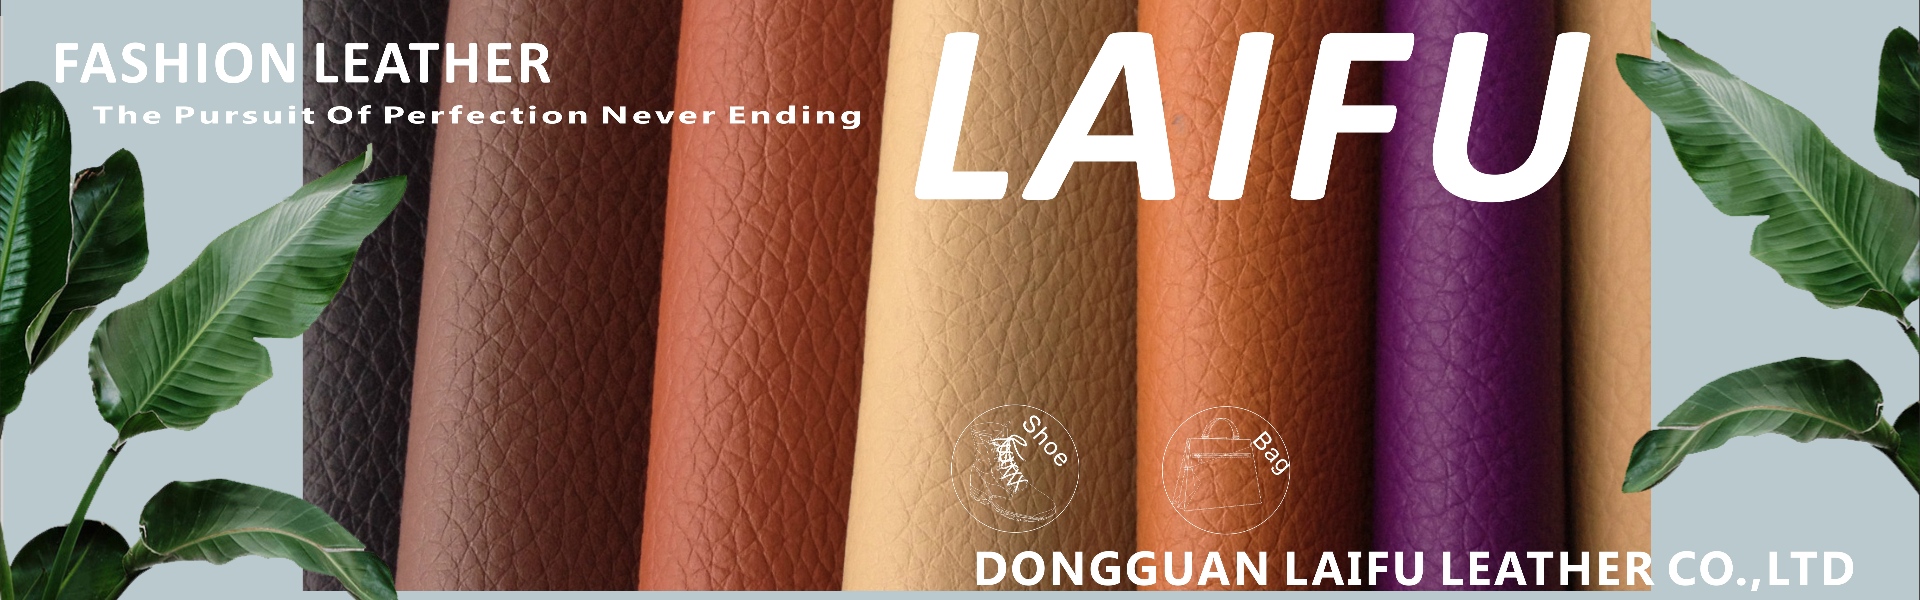 Dongguan laifu leather.Co. ltd